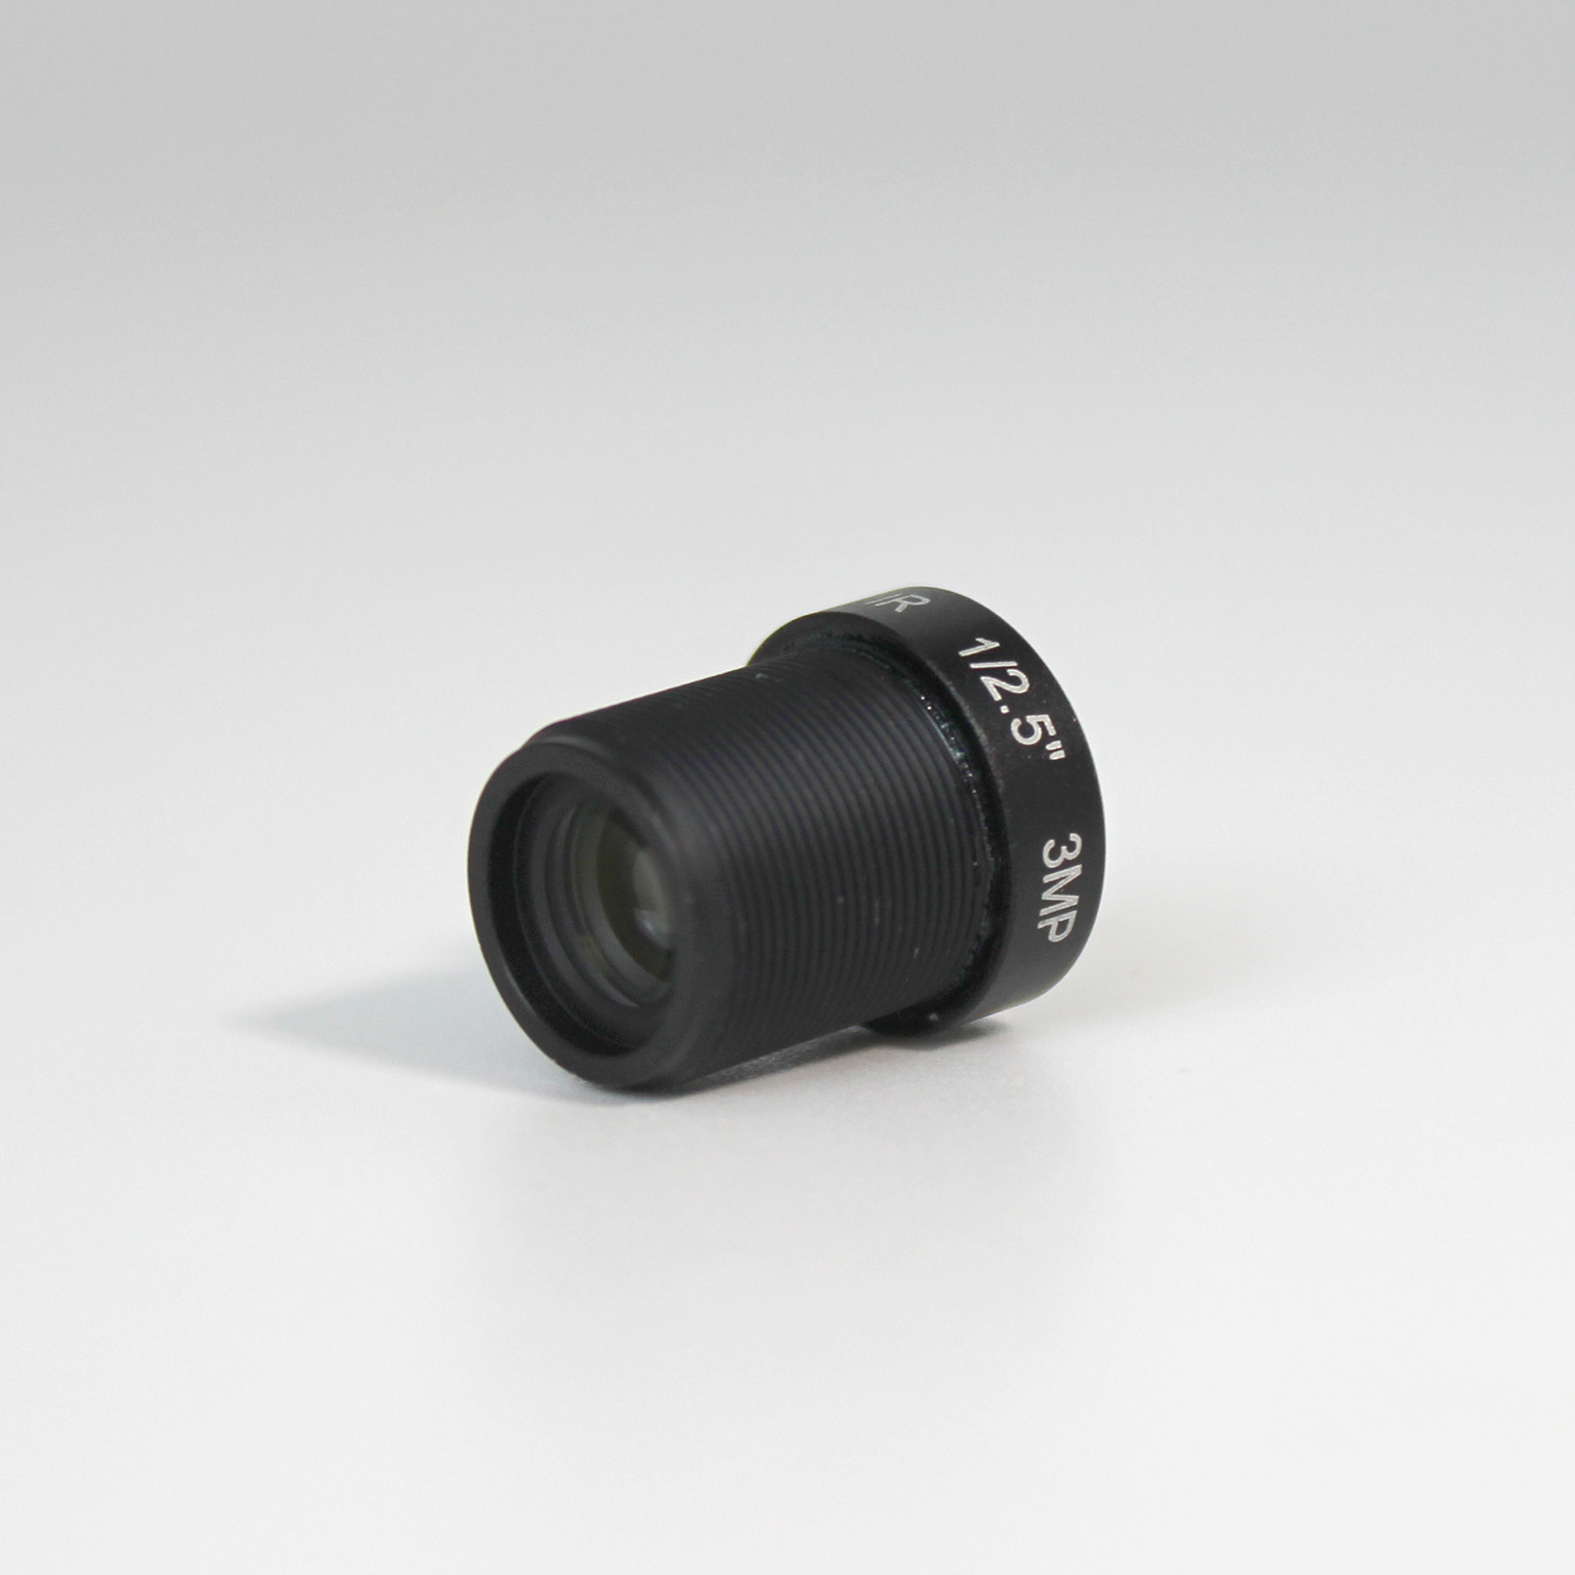 High Quality Optics Industrial Cameras M12 Lens